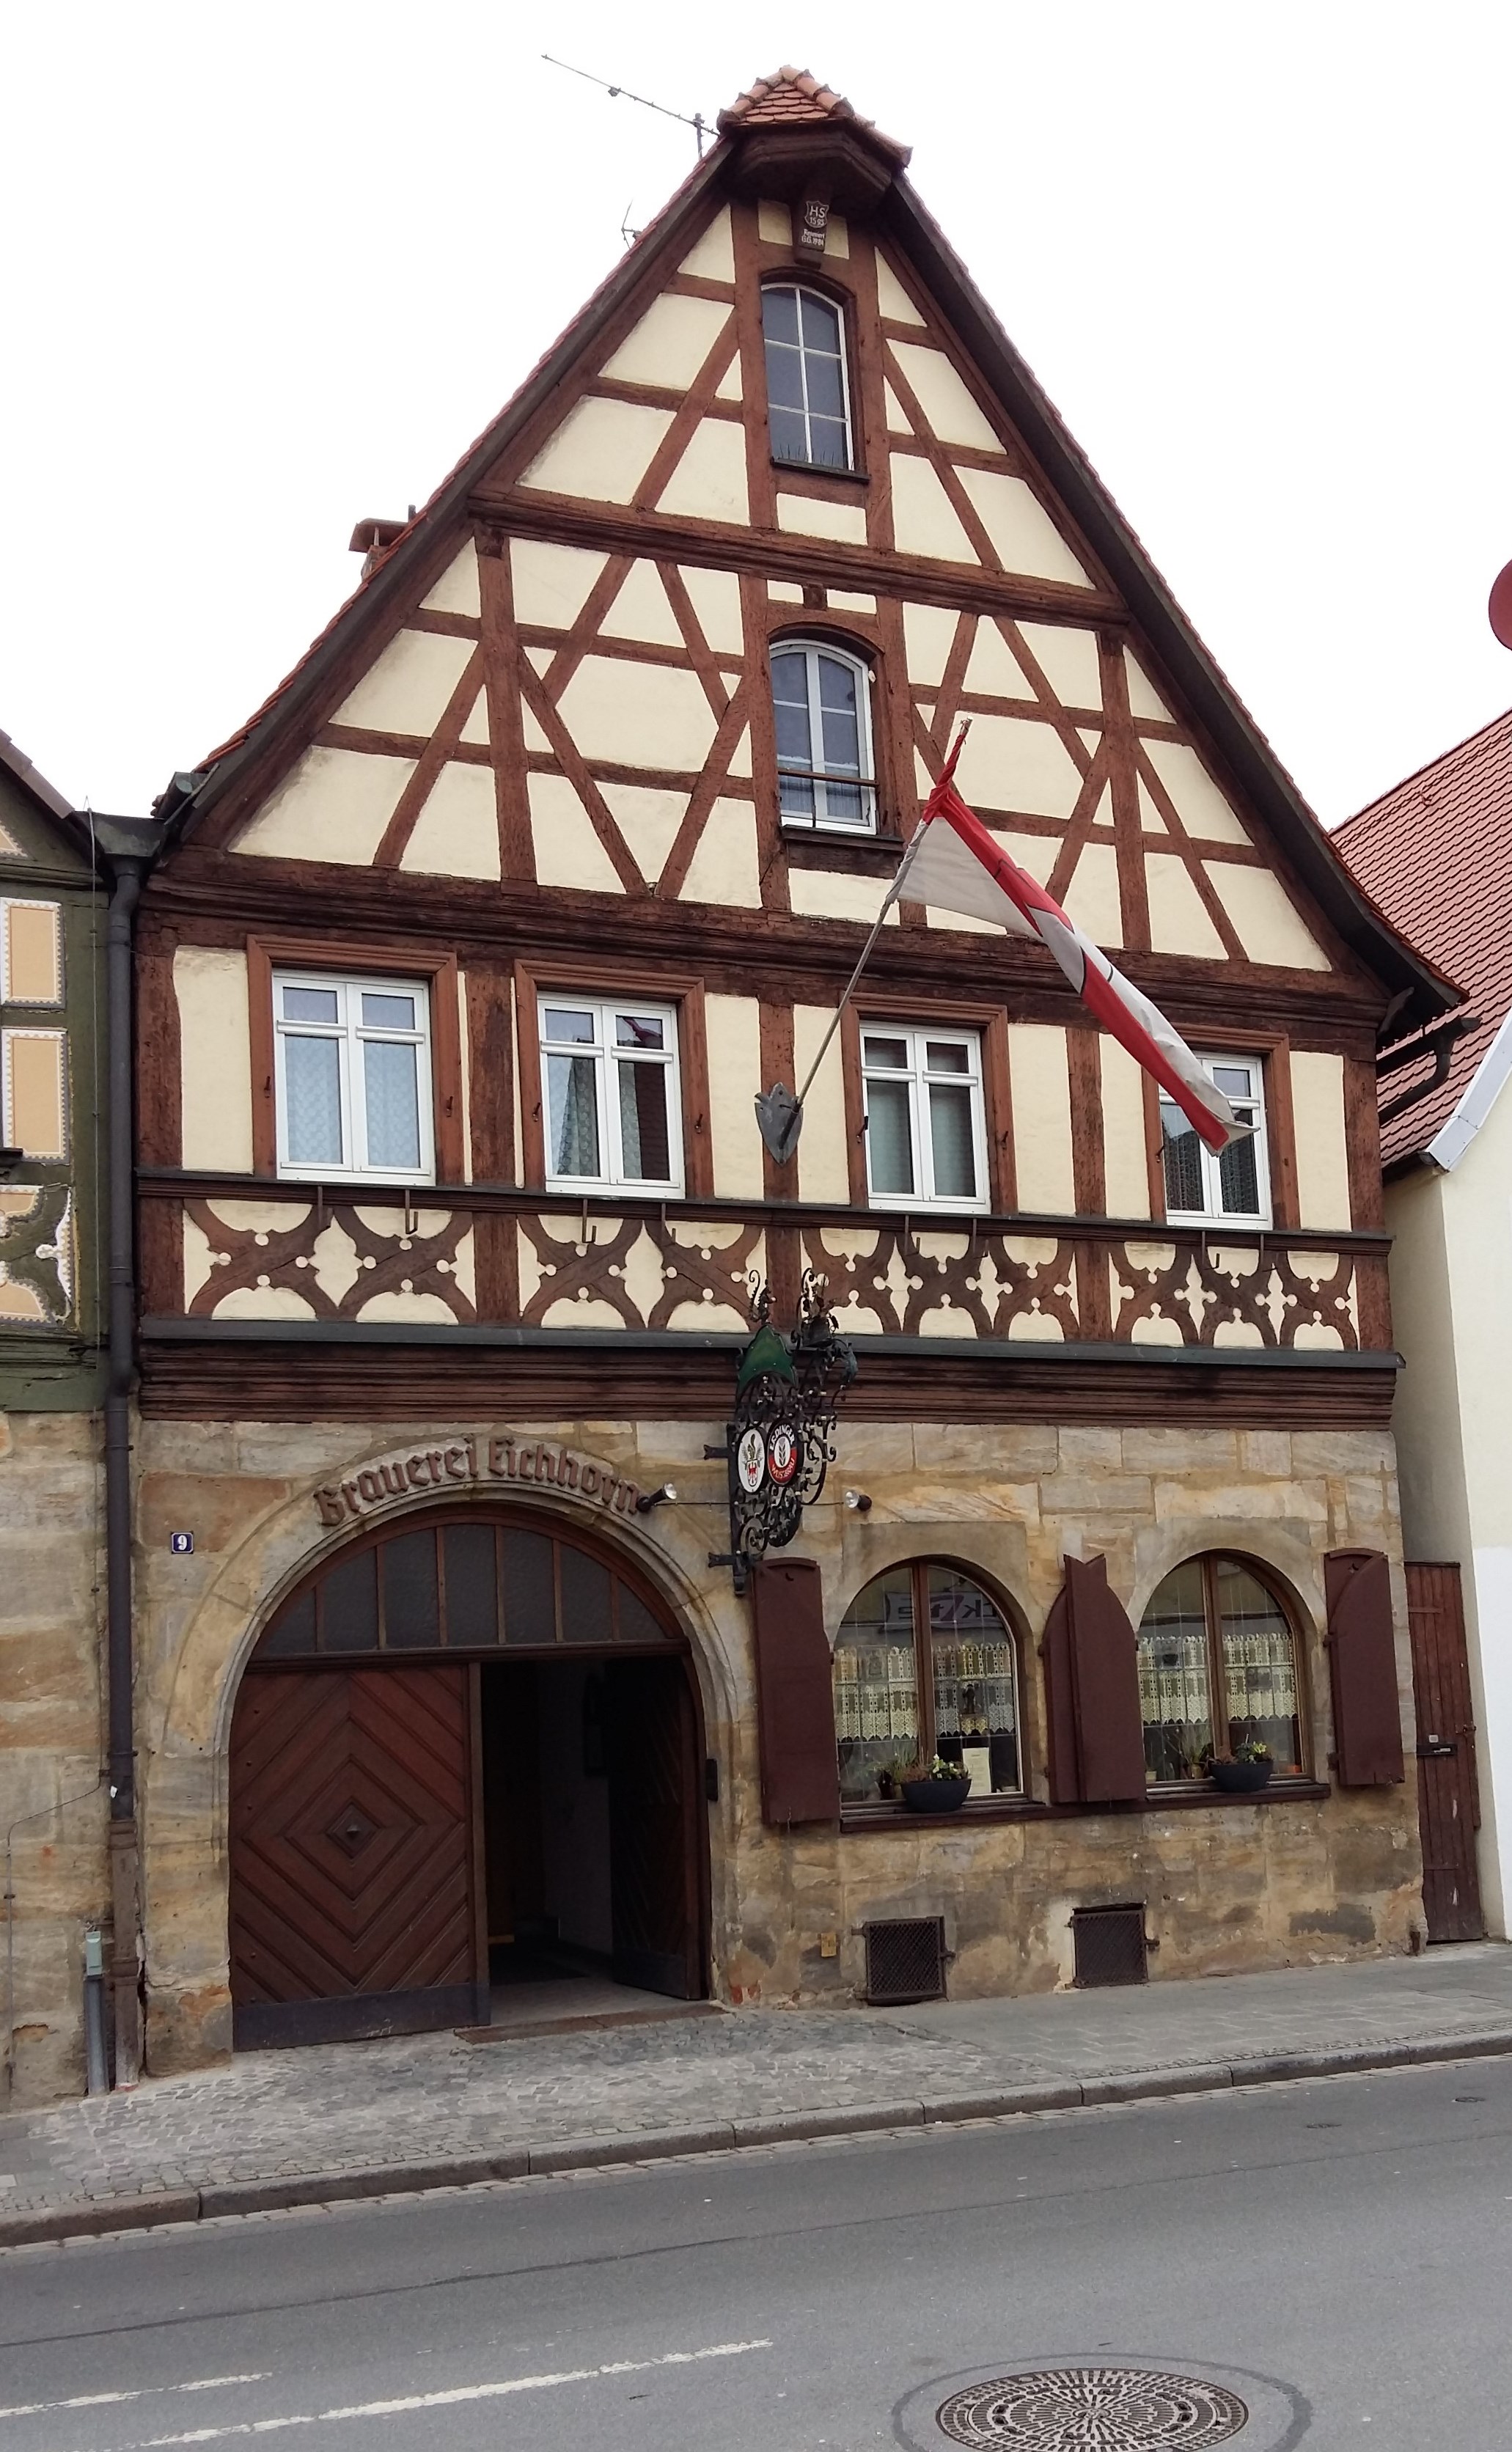 Bild 1 Brauereigaststätte Eichhorn in Forchheim